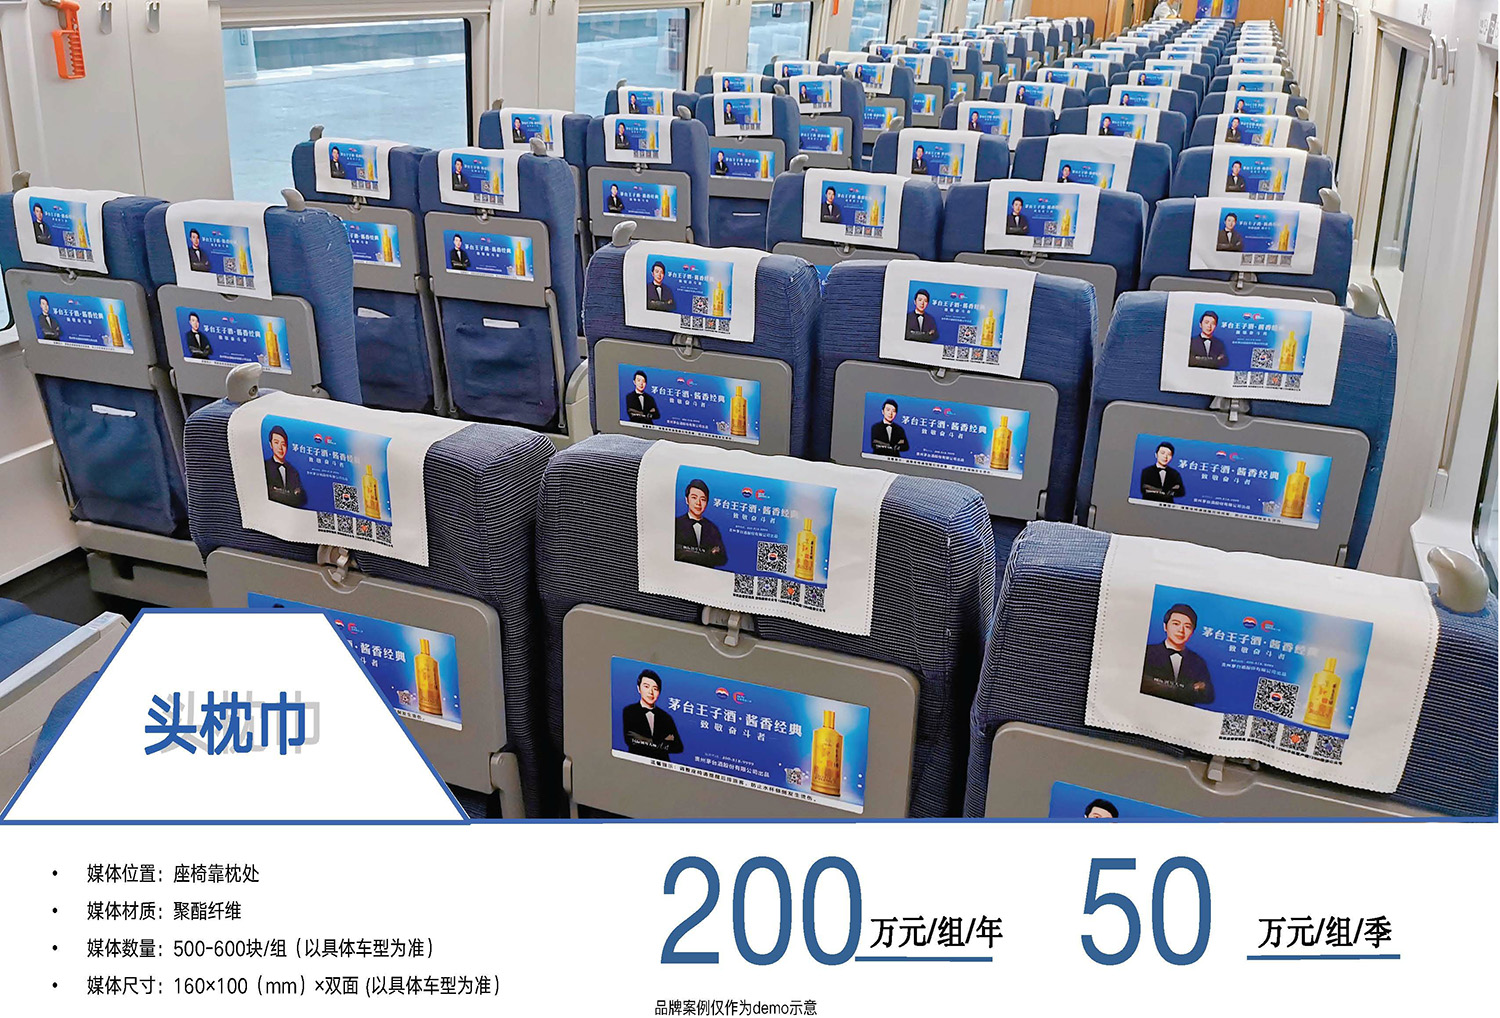 广州南站灯箱广告及和谐号贵广线列车全媒体广告(图15)